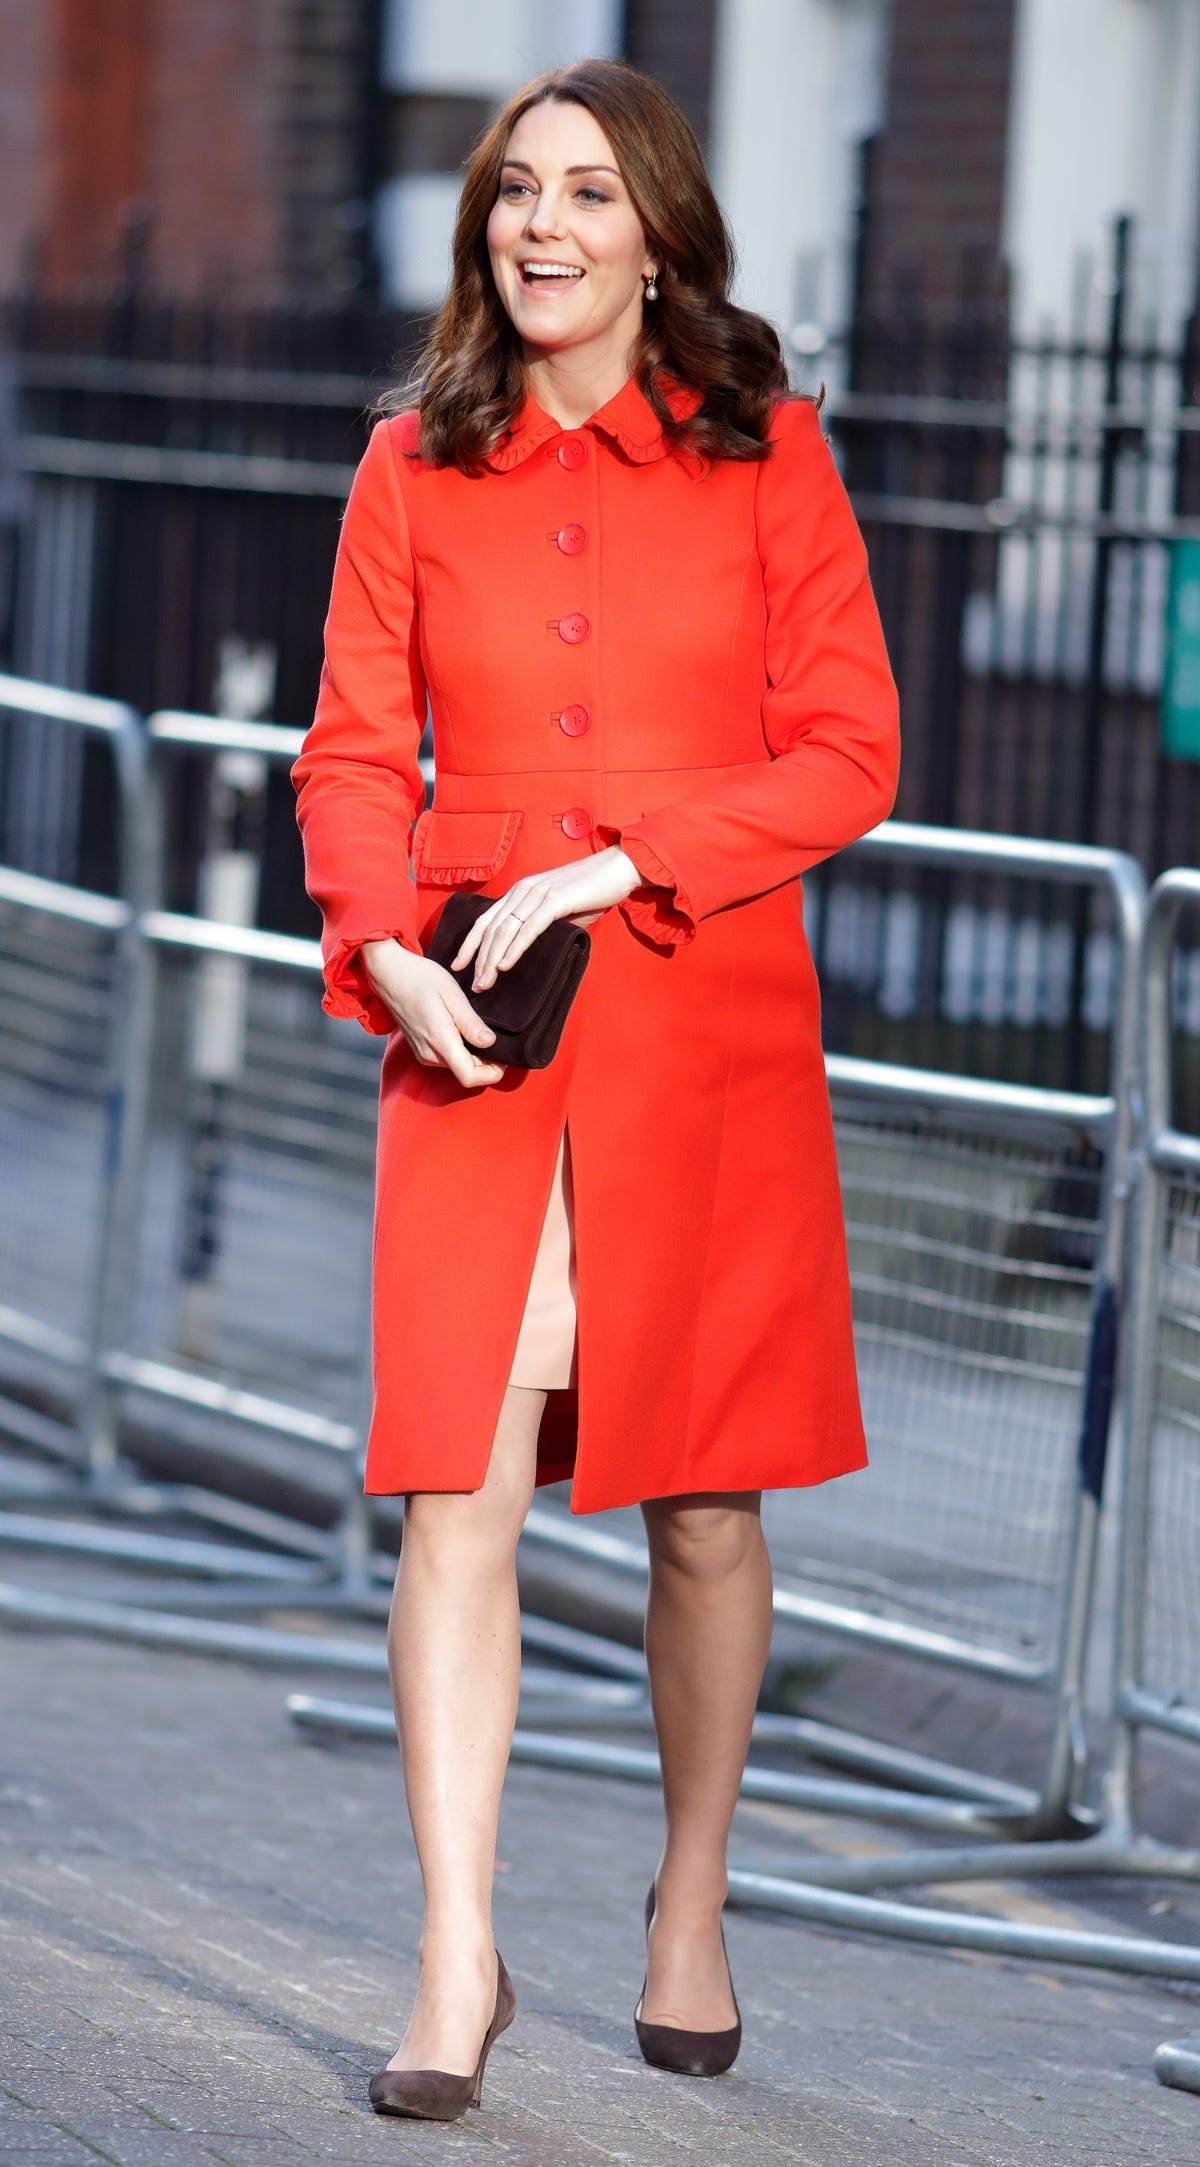 Bên cạnh đó, nữ Công tước cũng sở hữu những chiếc áo choàng với gam màu rực rỡ (chiếm 18%), màu xám hoặc màu nâu (14%).